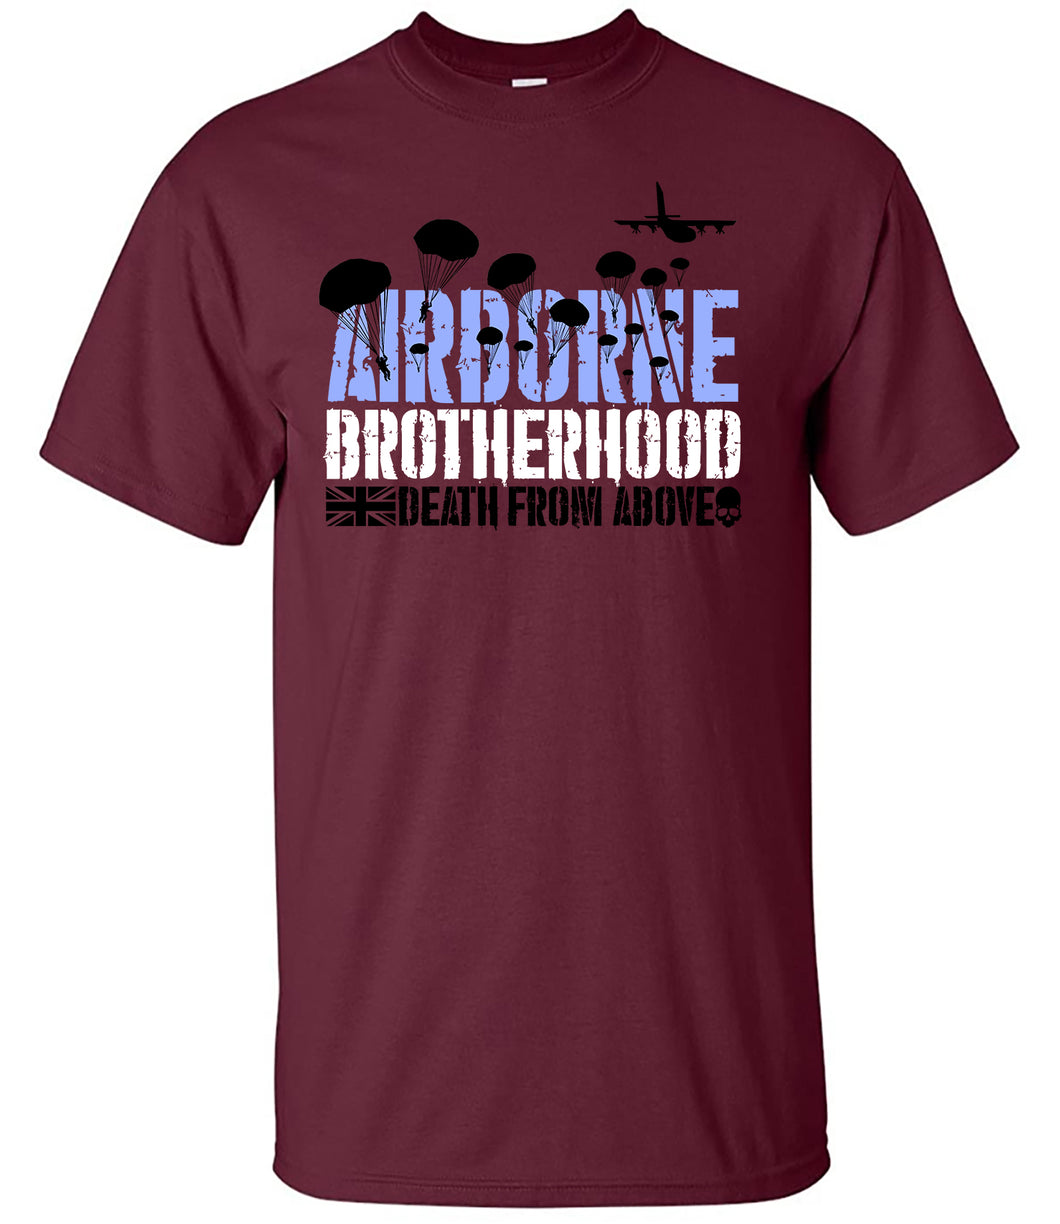 Military Humor - Airborne - Brotherhood